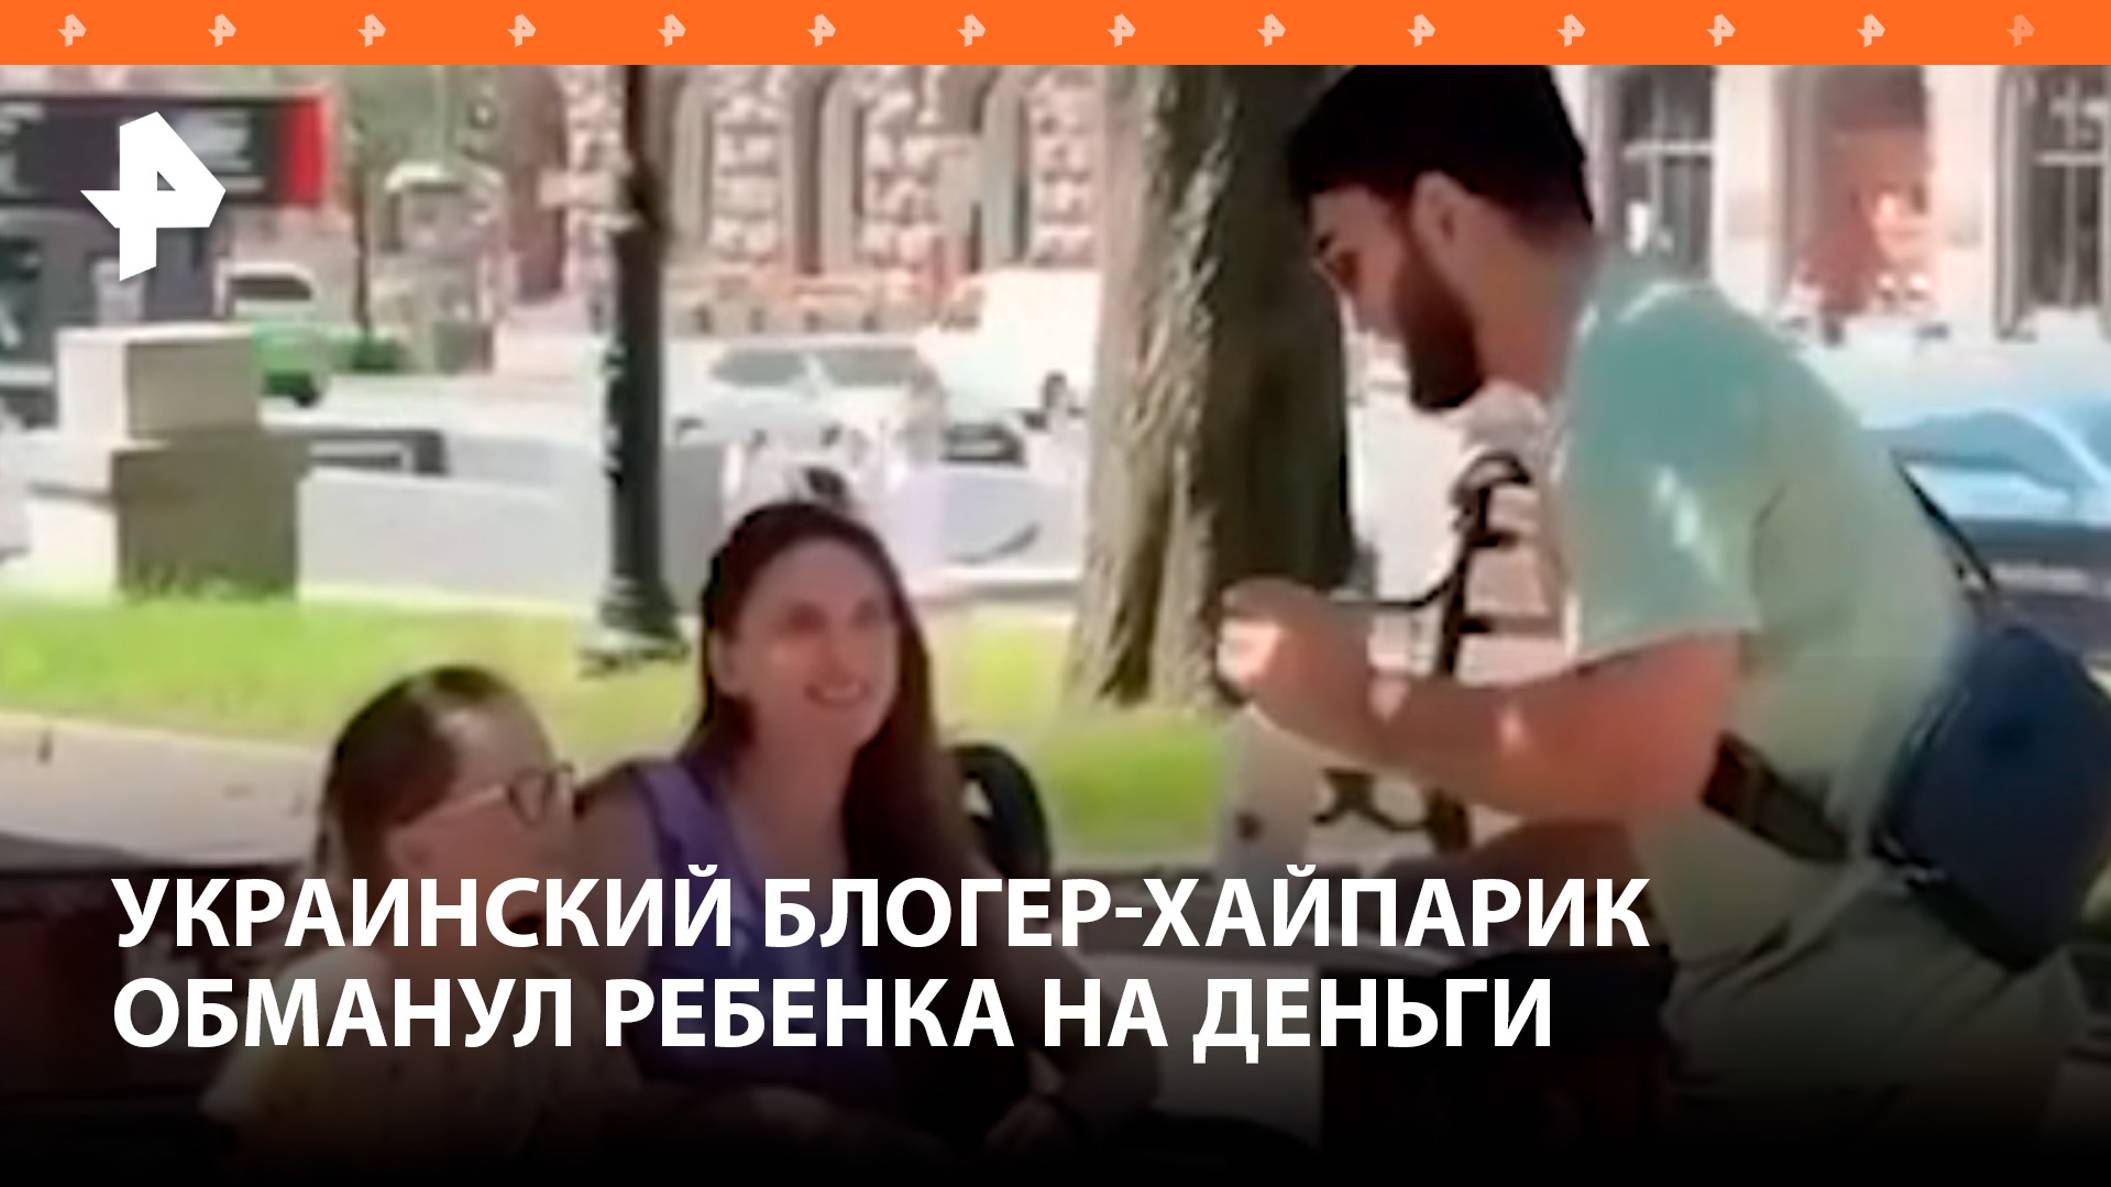 Заставил давиться бургером и обманул: украинский блогер отнял деньги у ребенка